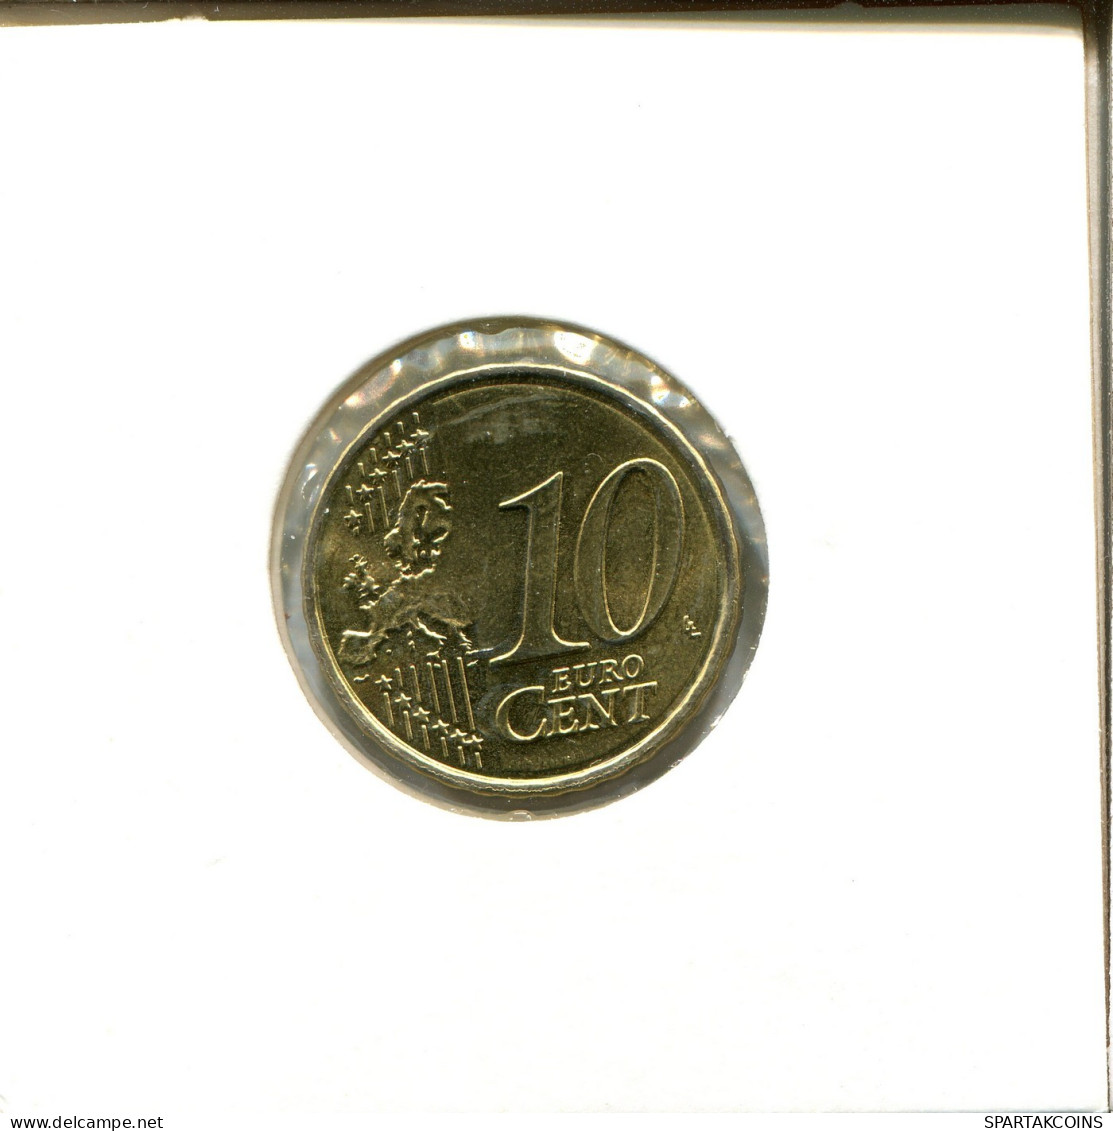 10 EURO CENTS 2011 ESPAÑA Moneda SPAIN #EU563.E.A - Spain